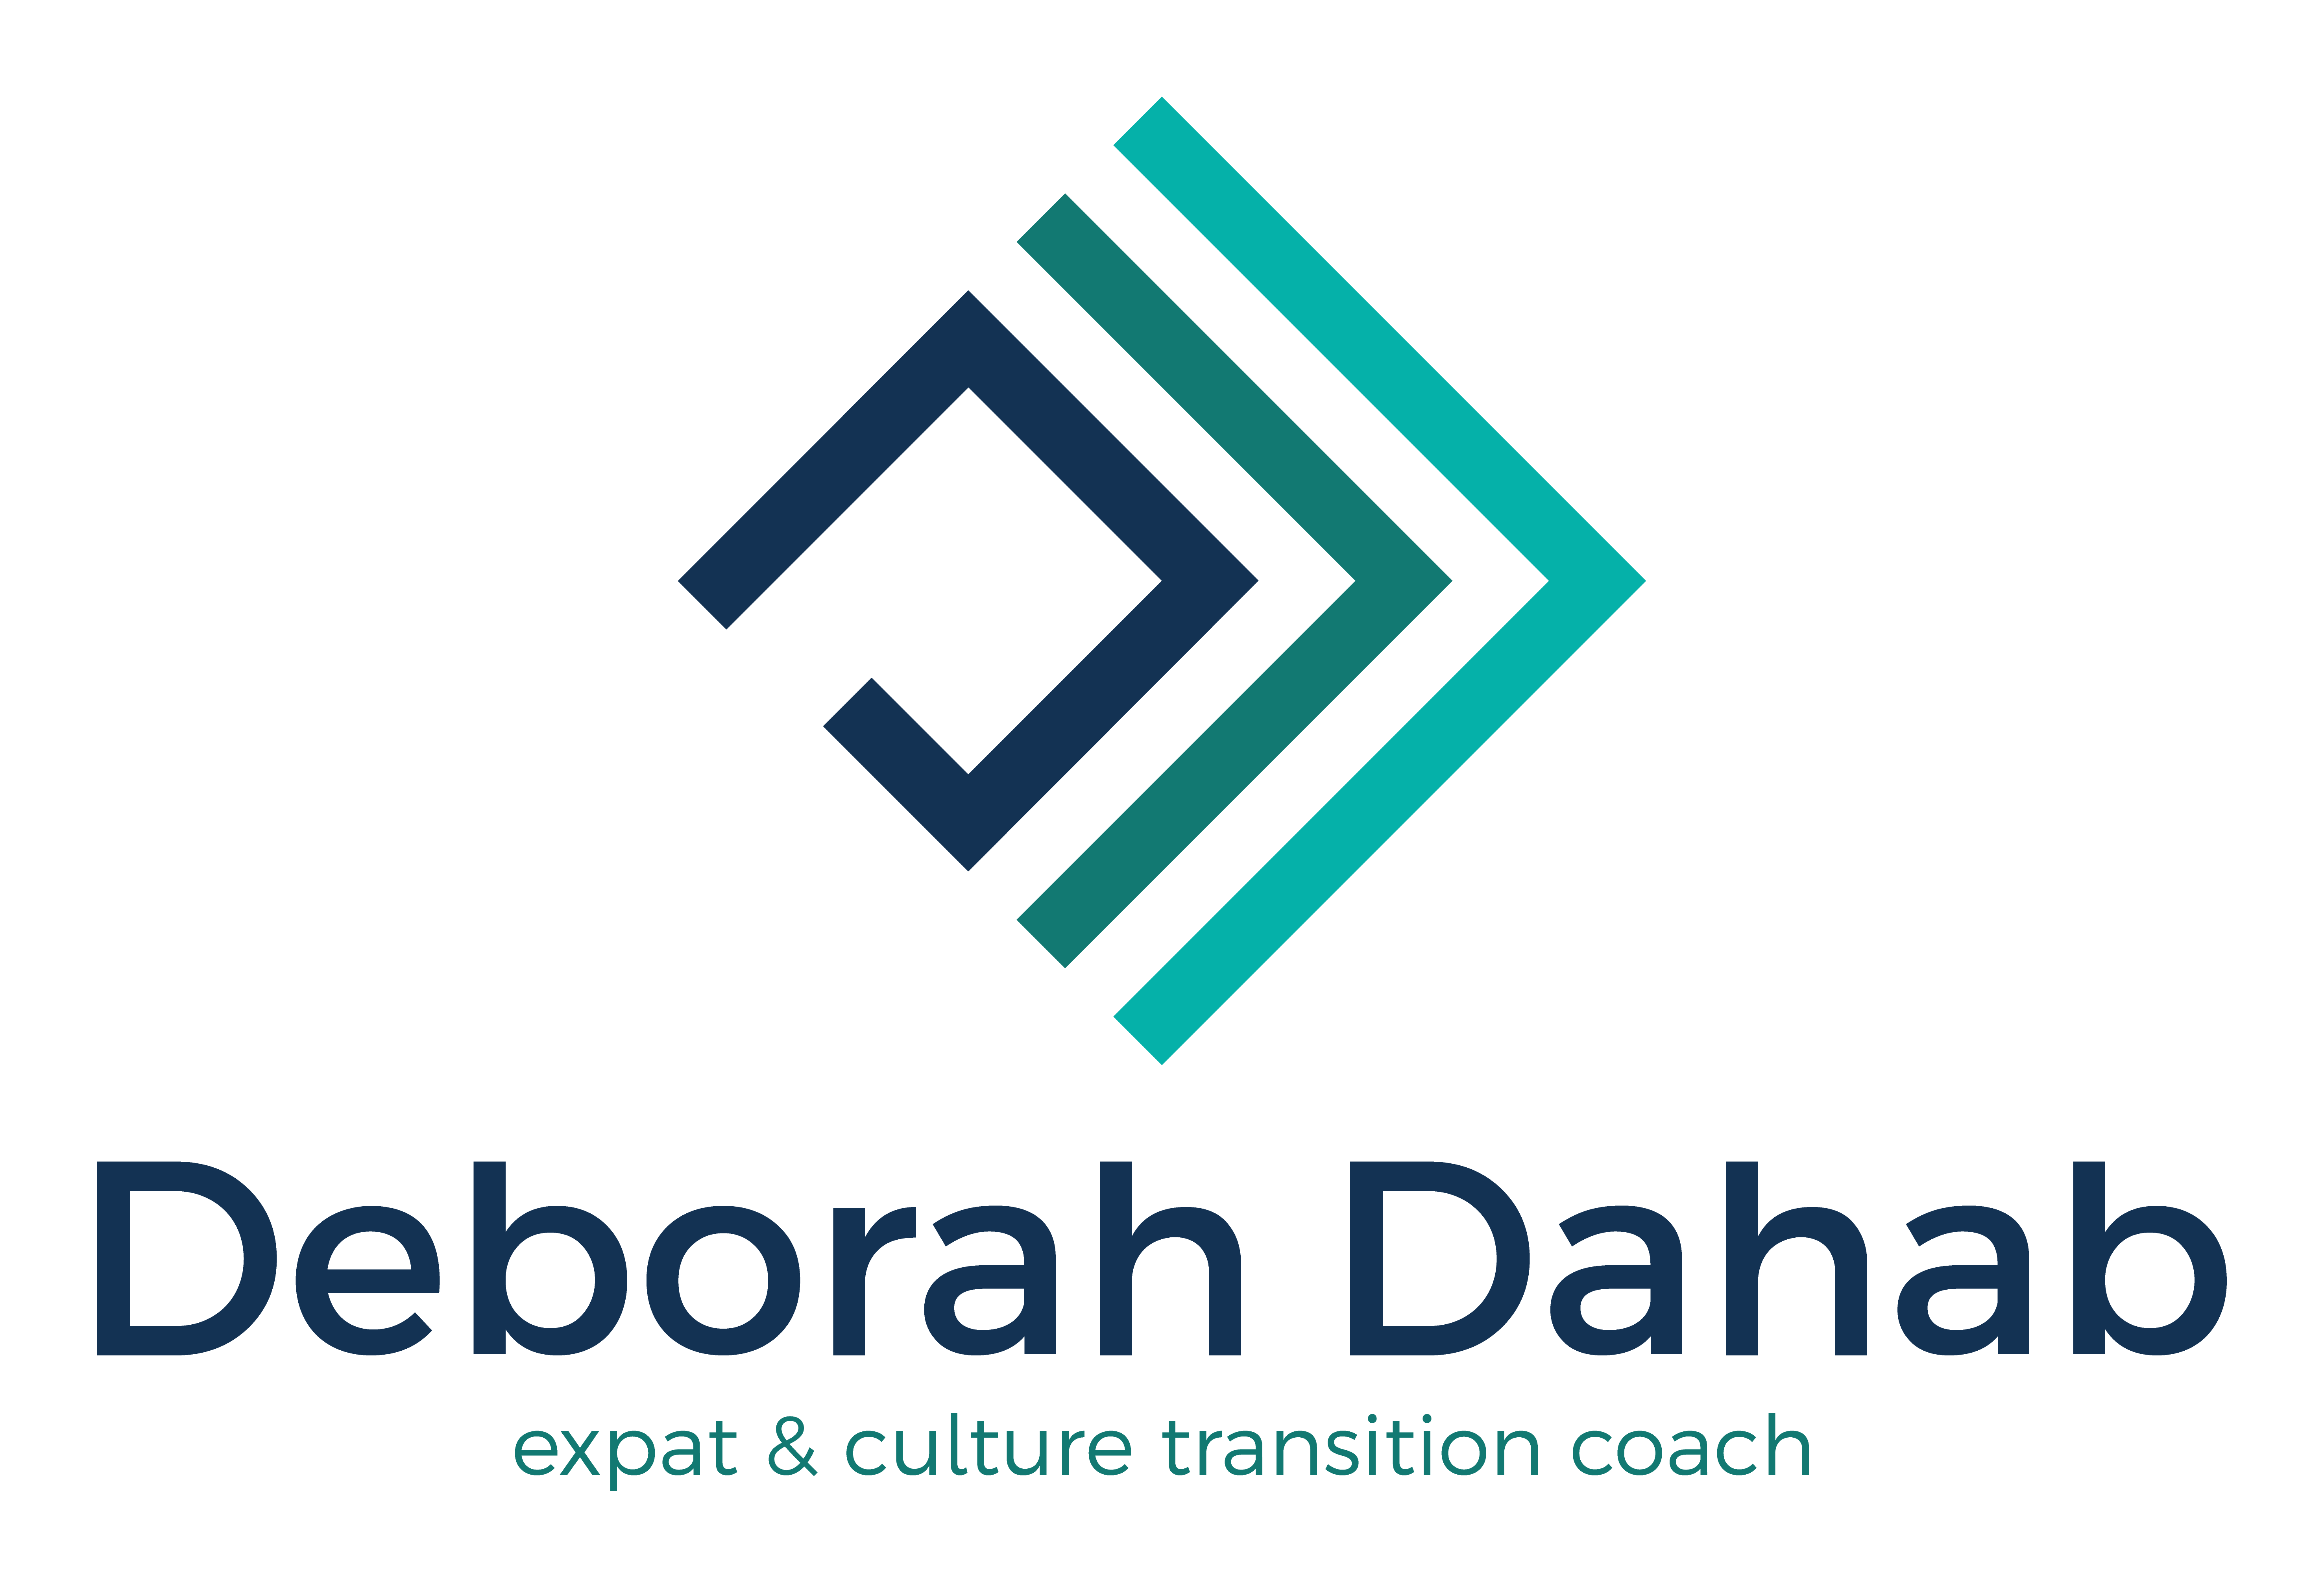 Deborah Dahab